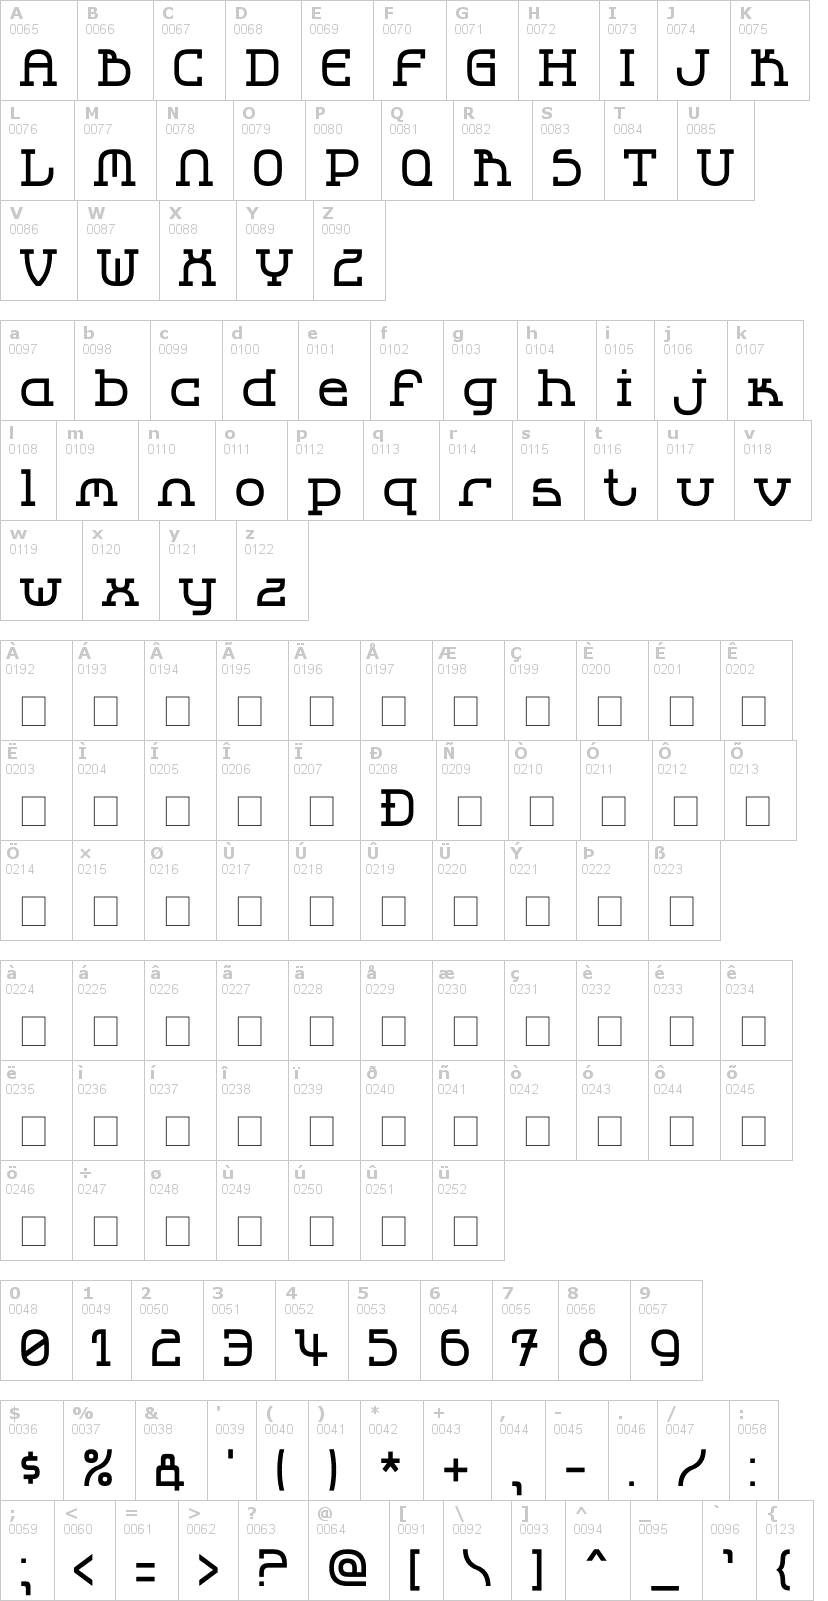 Lettere dell'alfabeto del font lbc-cool-2 con le quali è possibile realizzare adesivi prespaziati